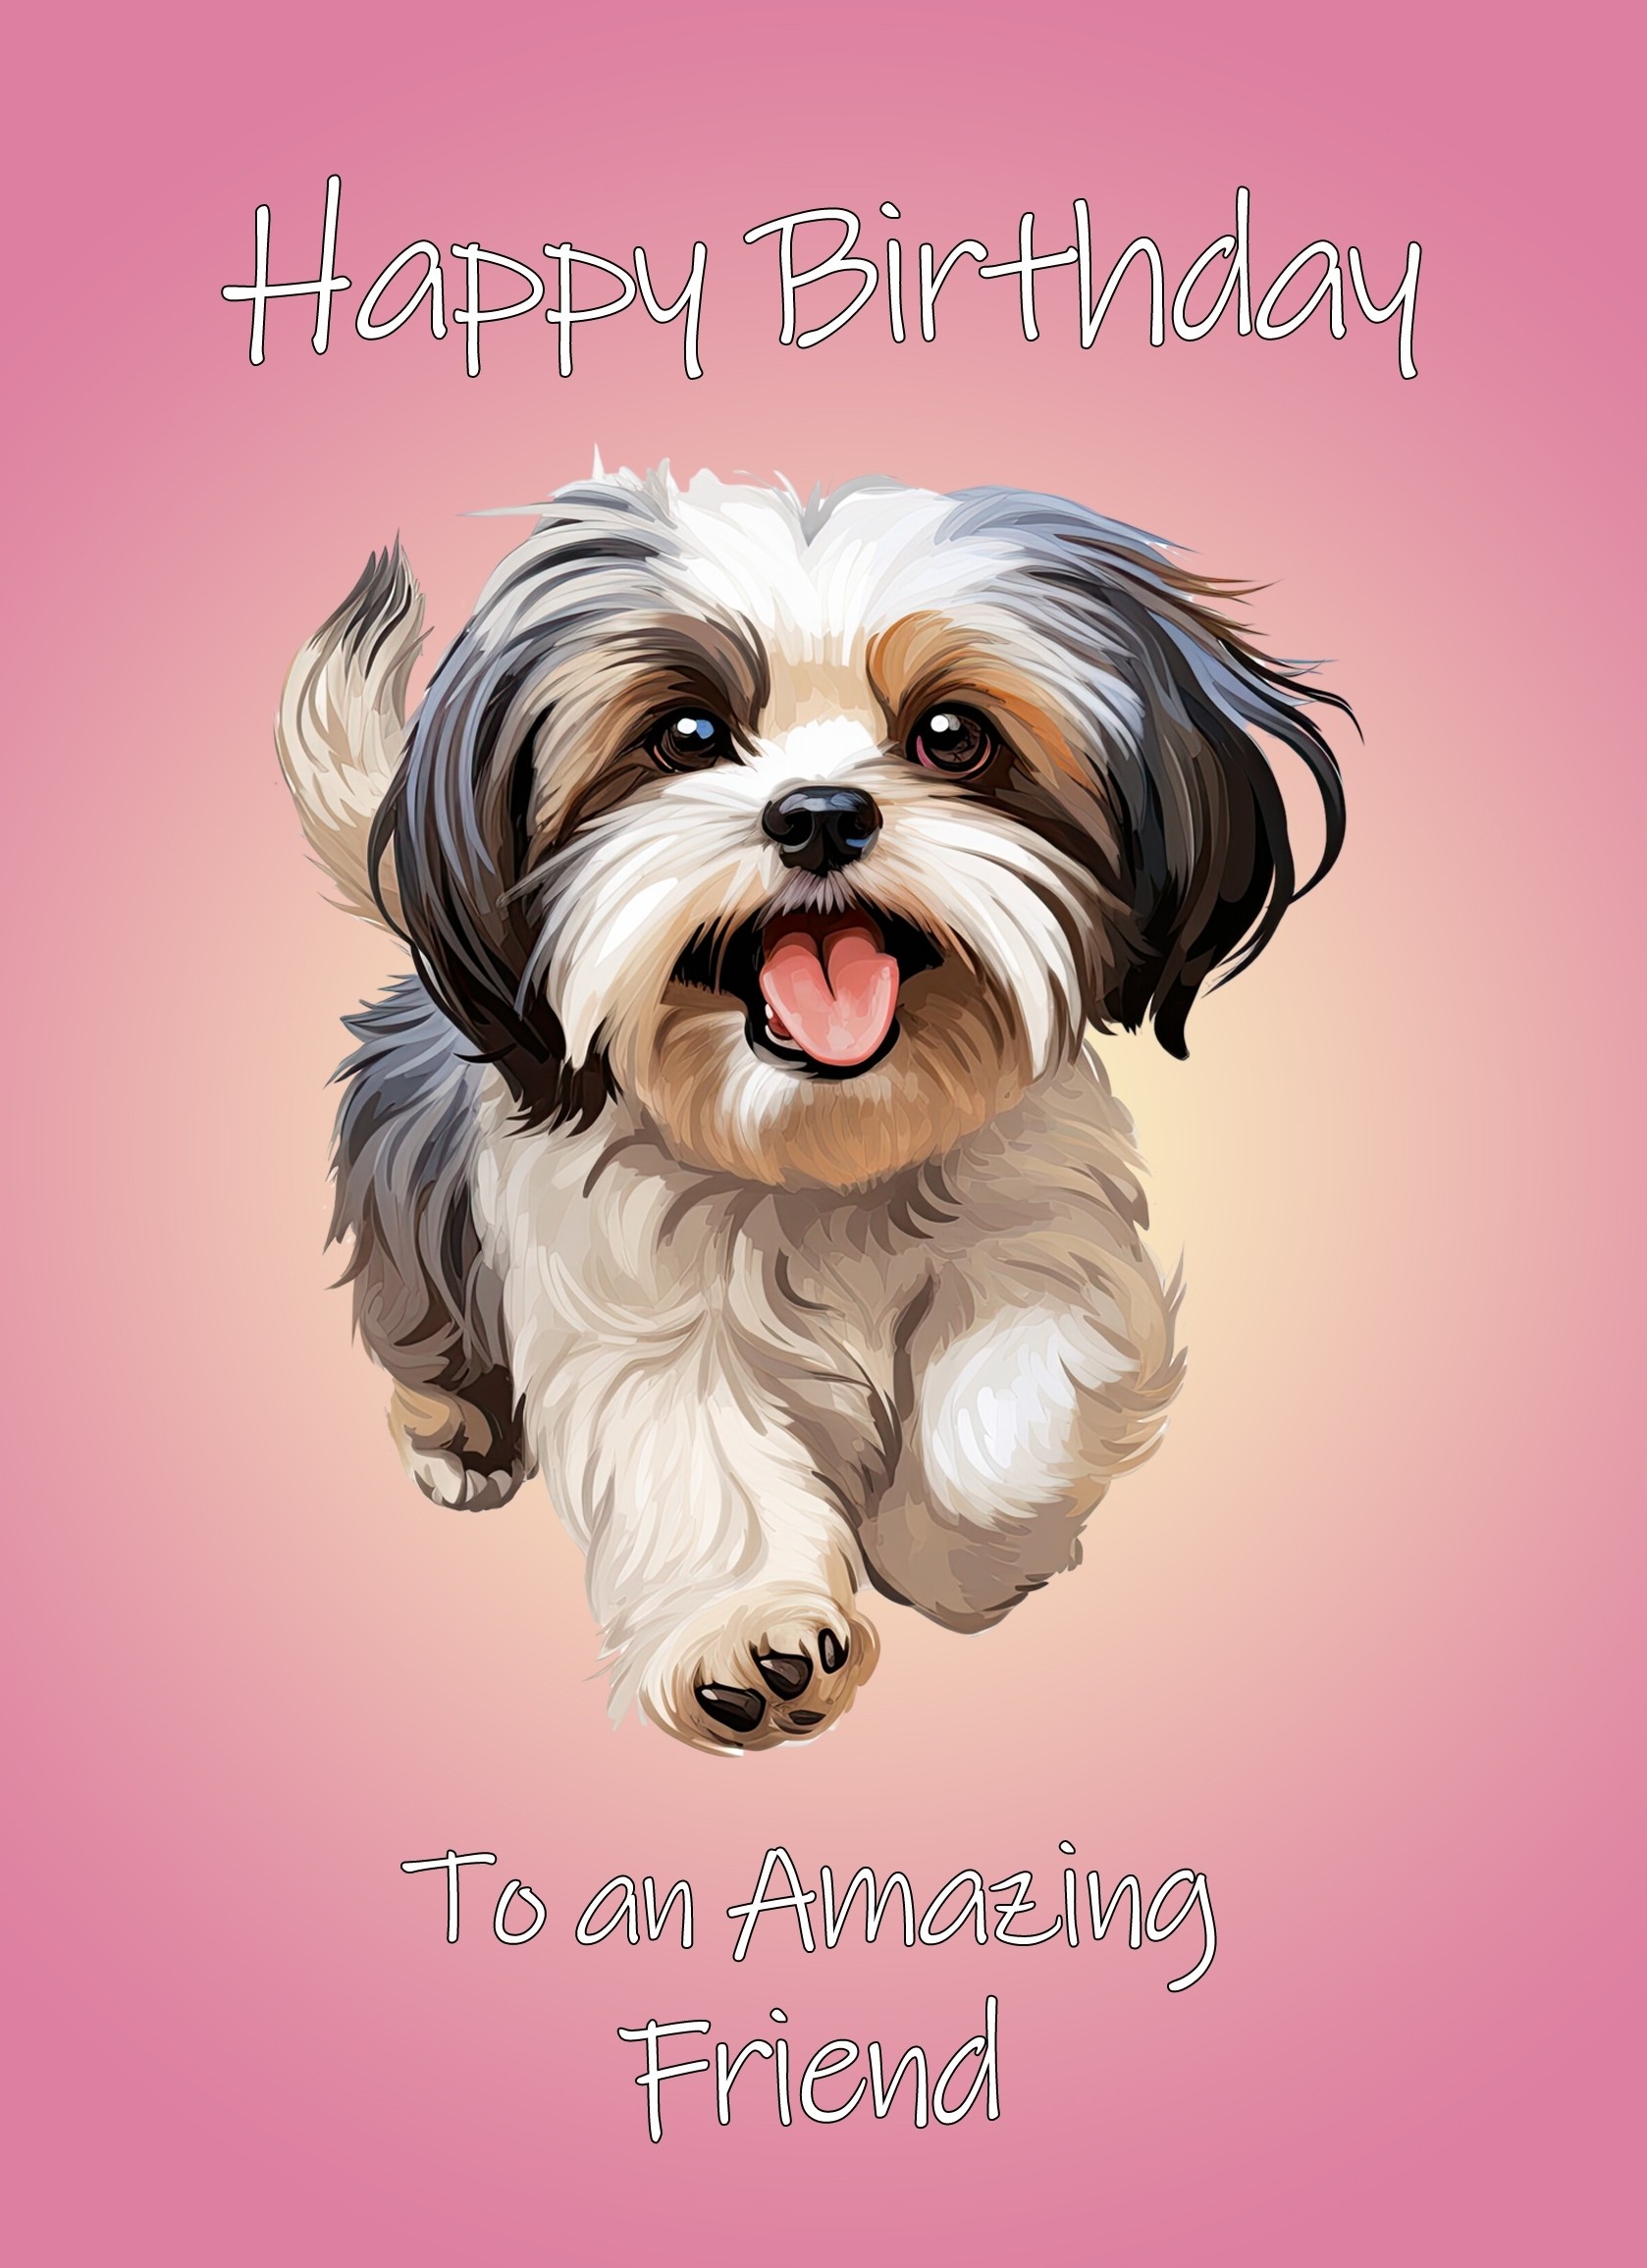 Shih Tzu Dog Birthday Card For Friend